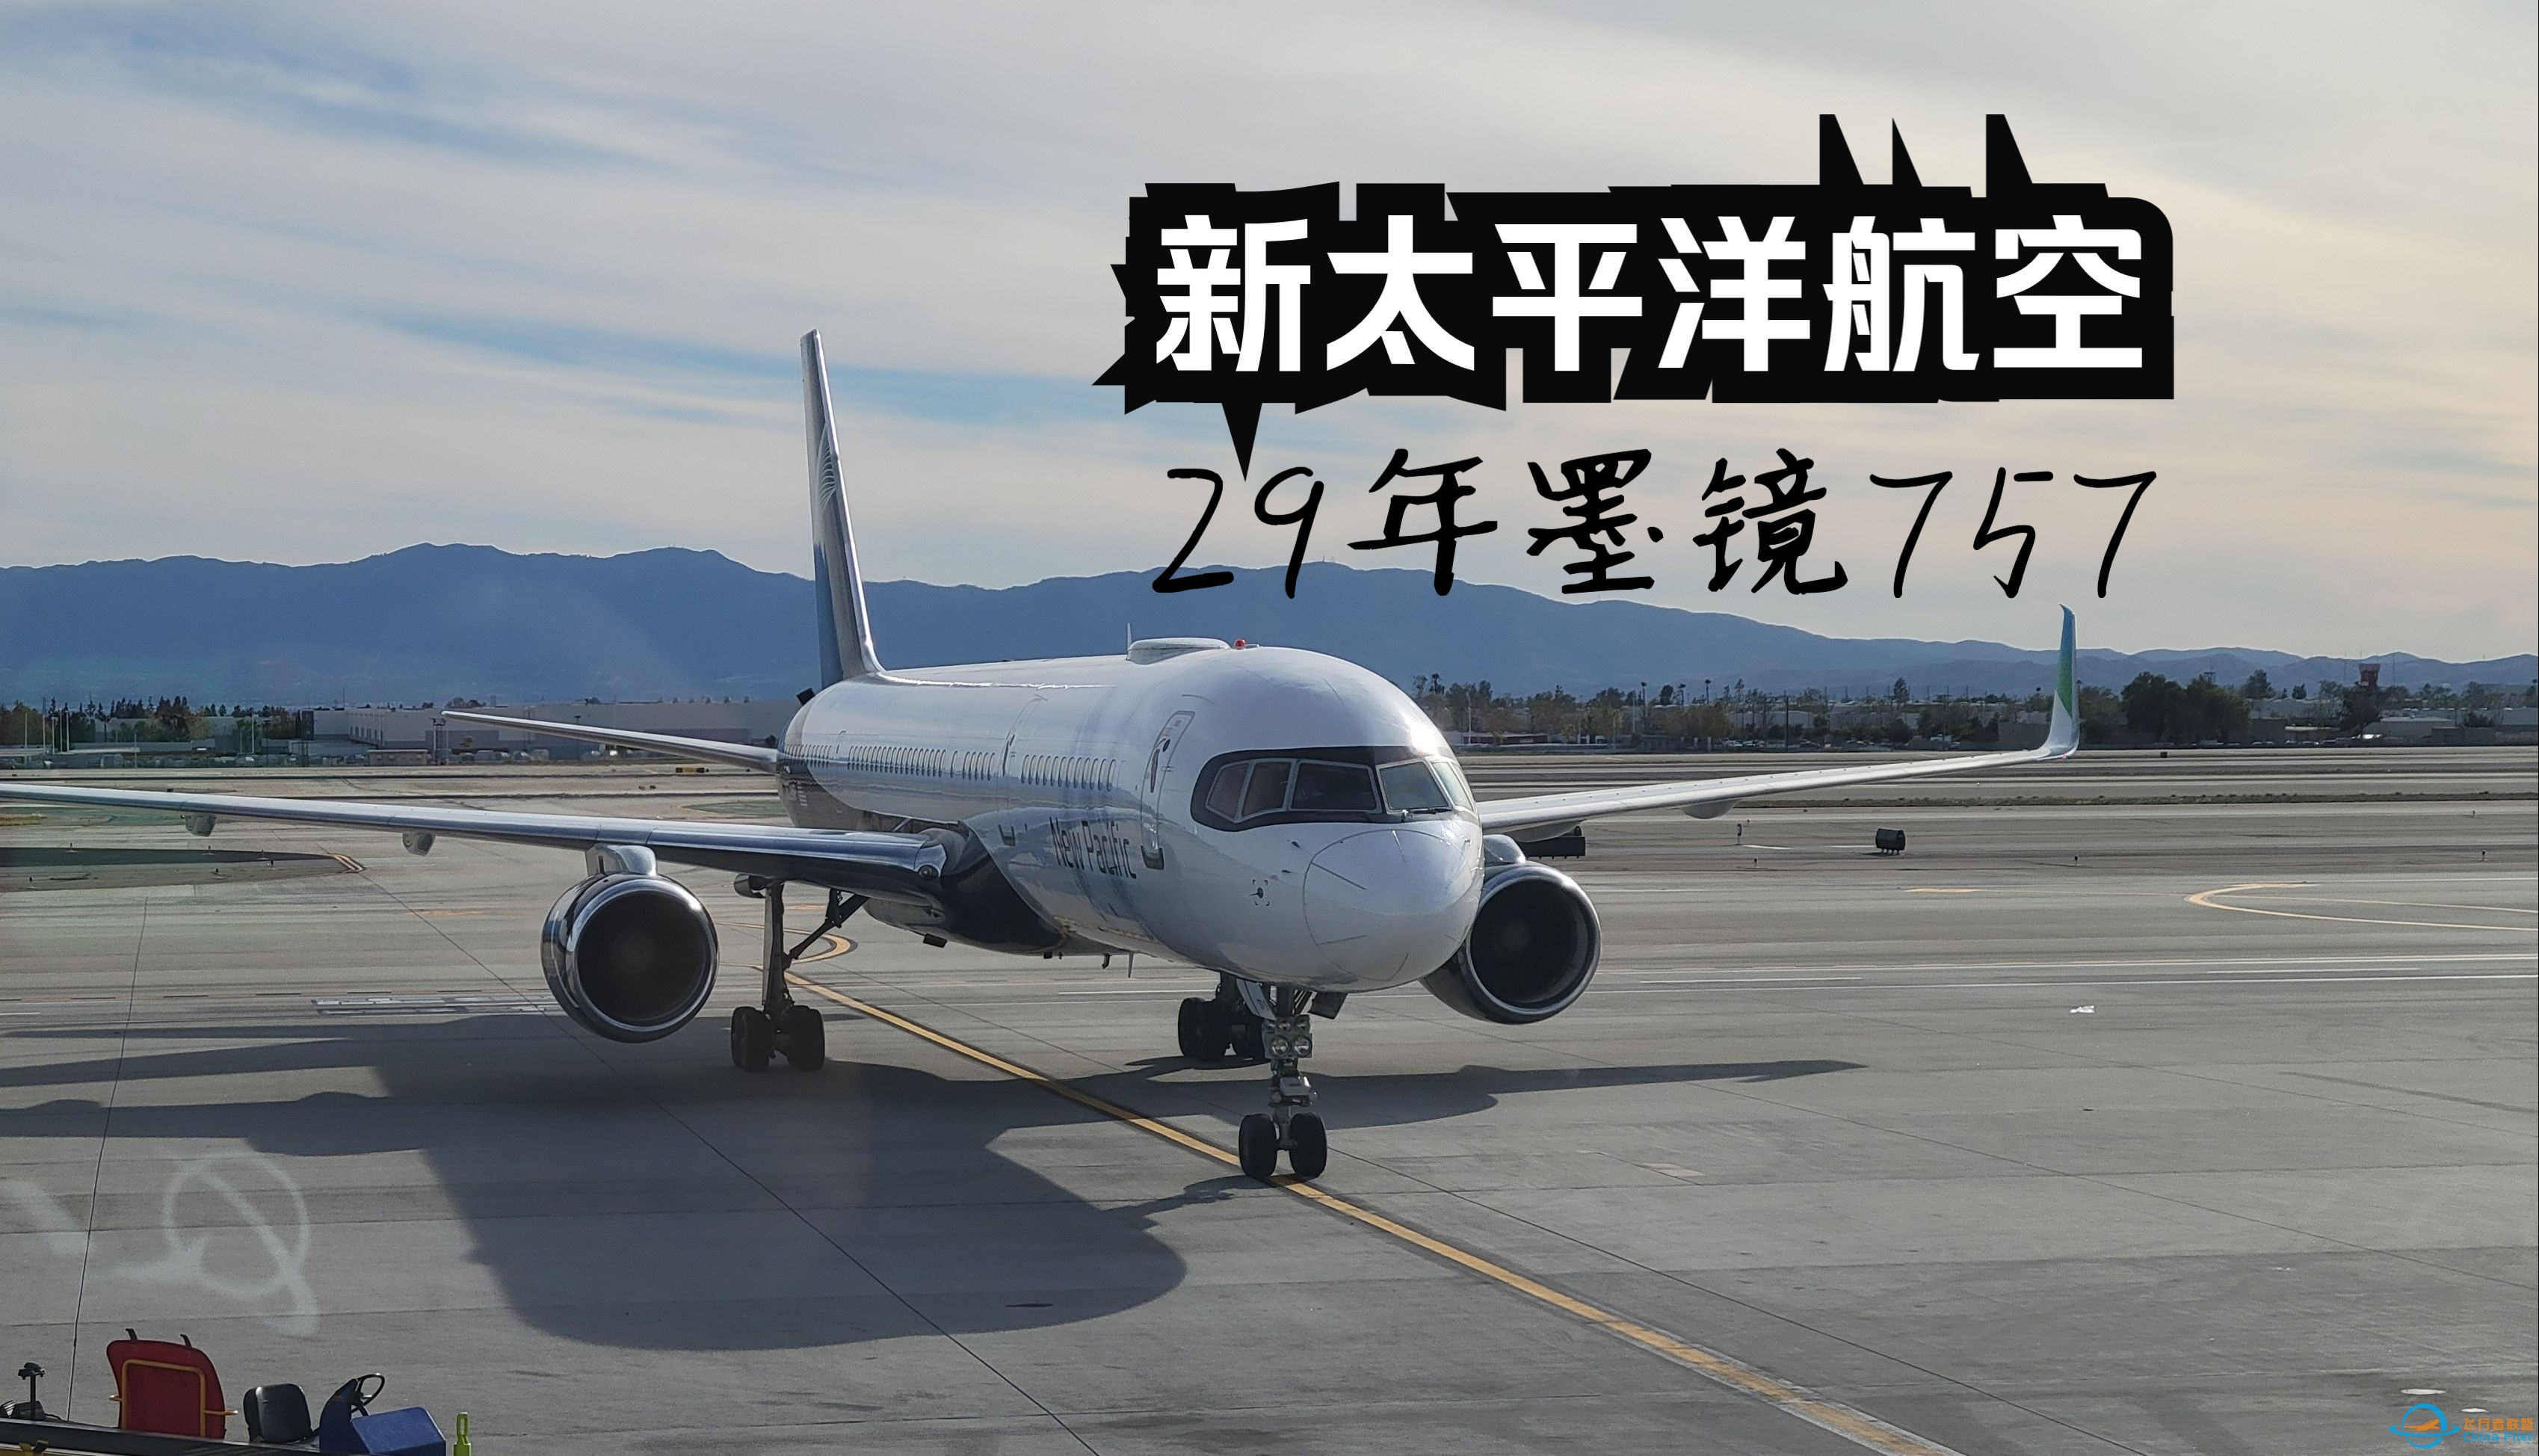 【飞行游记】当全新跨太平洋公司遇上墨镜757？全站首发新太平洋航空波音757超级经济舱体验-4476 